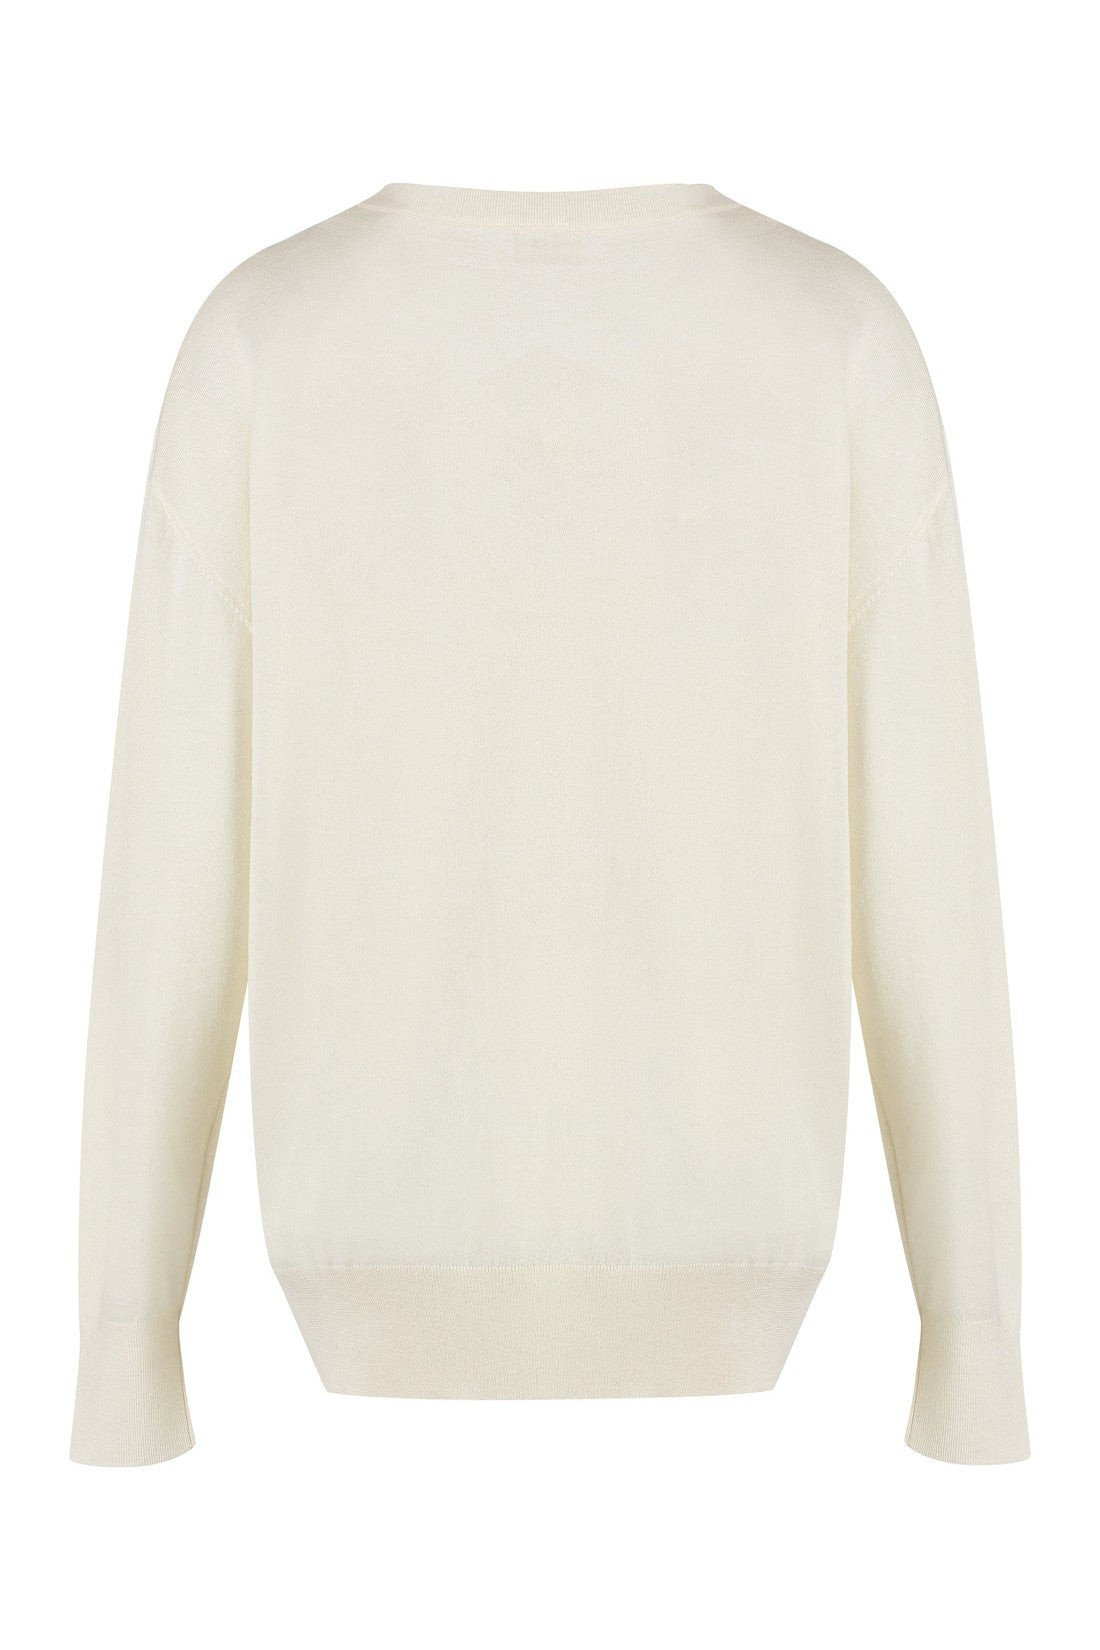 Parosh-OUTLET-SALE-Cashmere sweater-ARCHIVIST